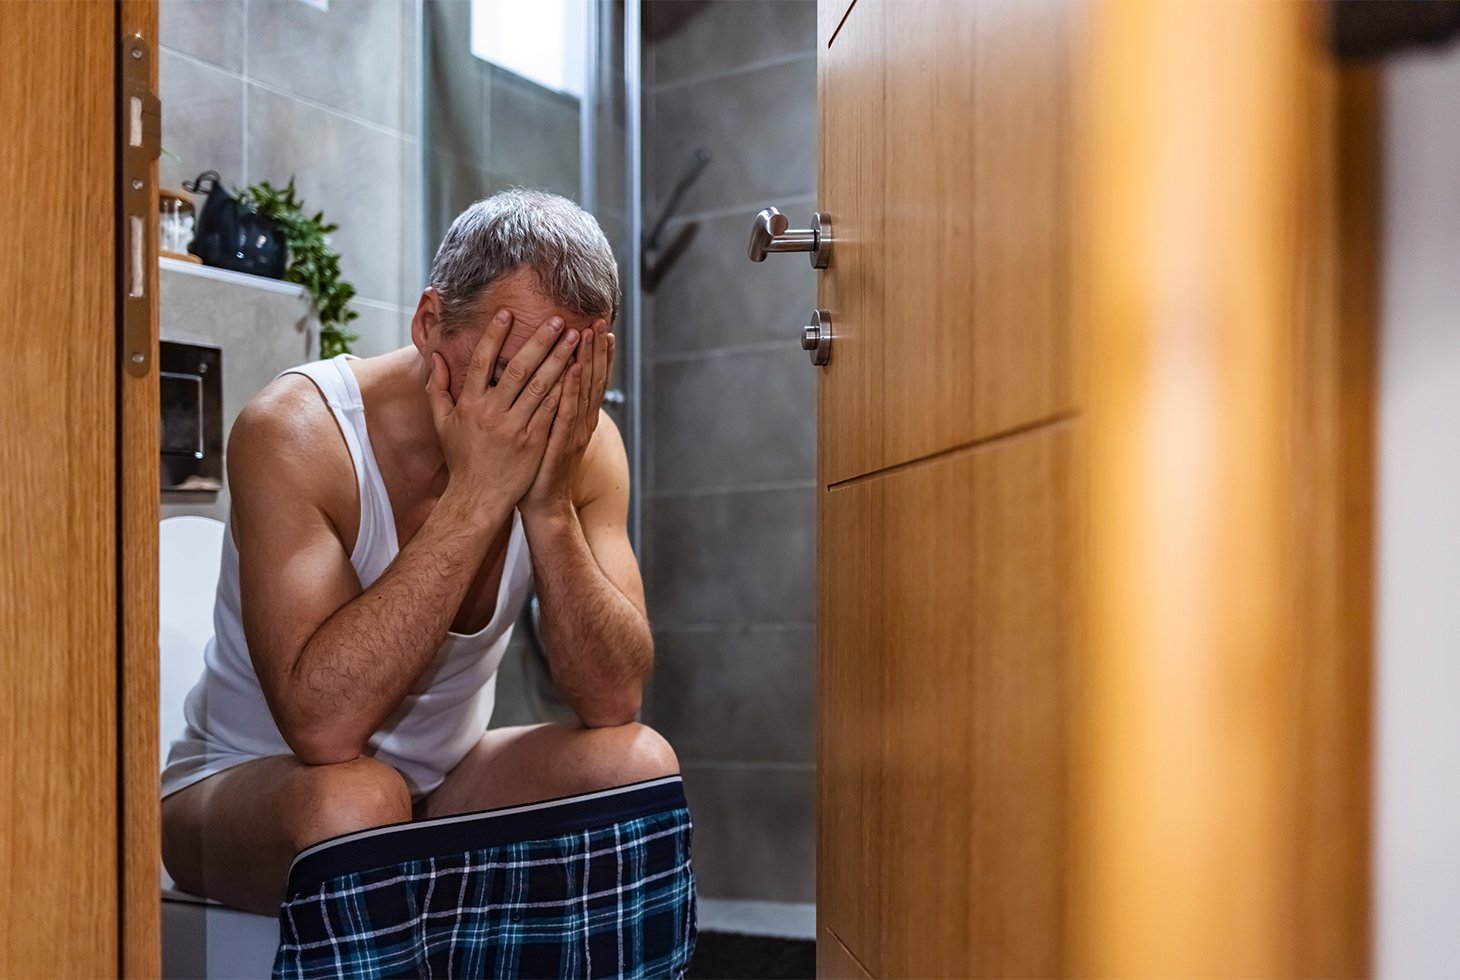 Un homme senior assis sur les toilettes se tenant la tête entre les mains. Visuel pour illustrer la constipation chronique et ses risques liés.